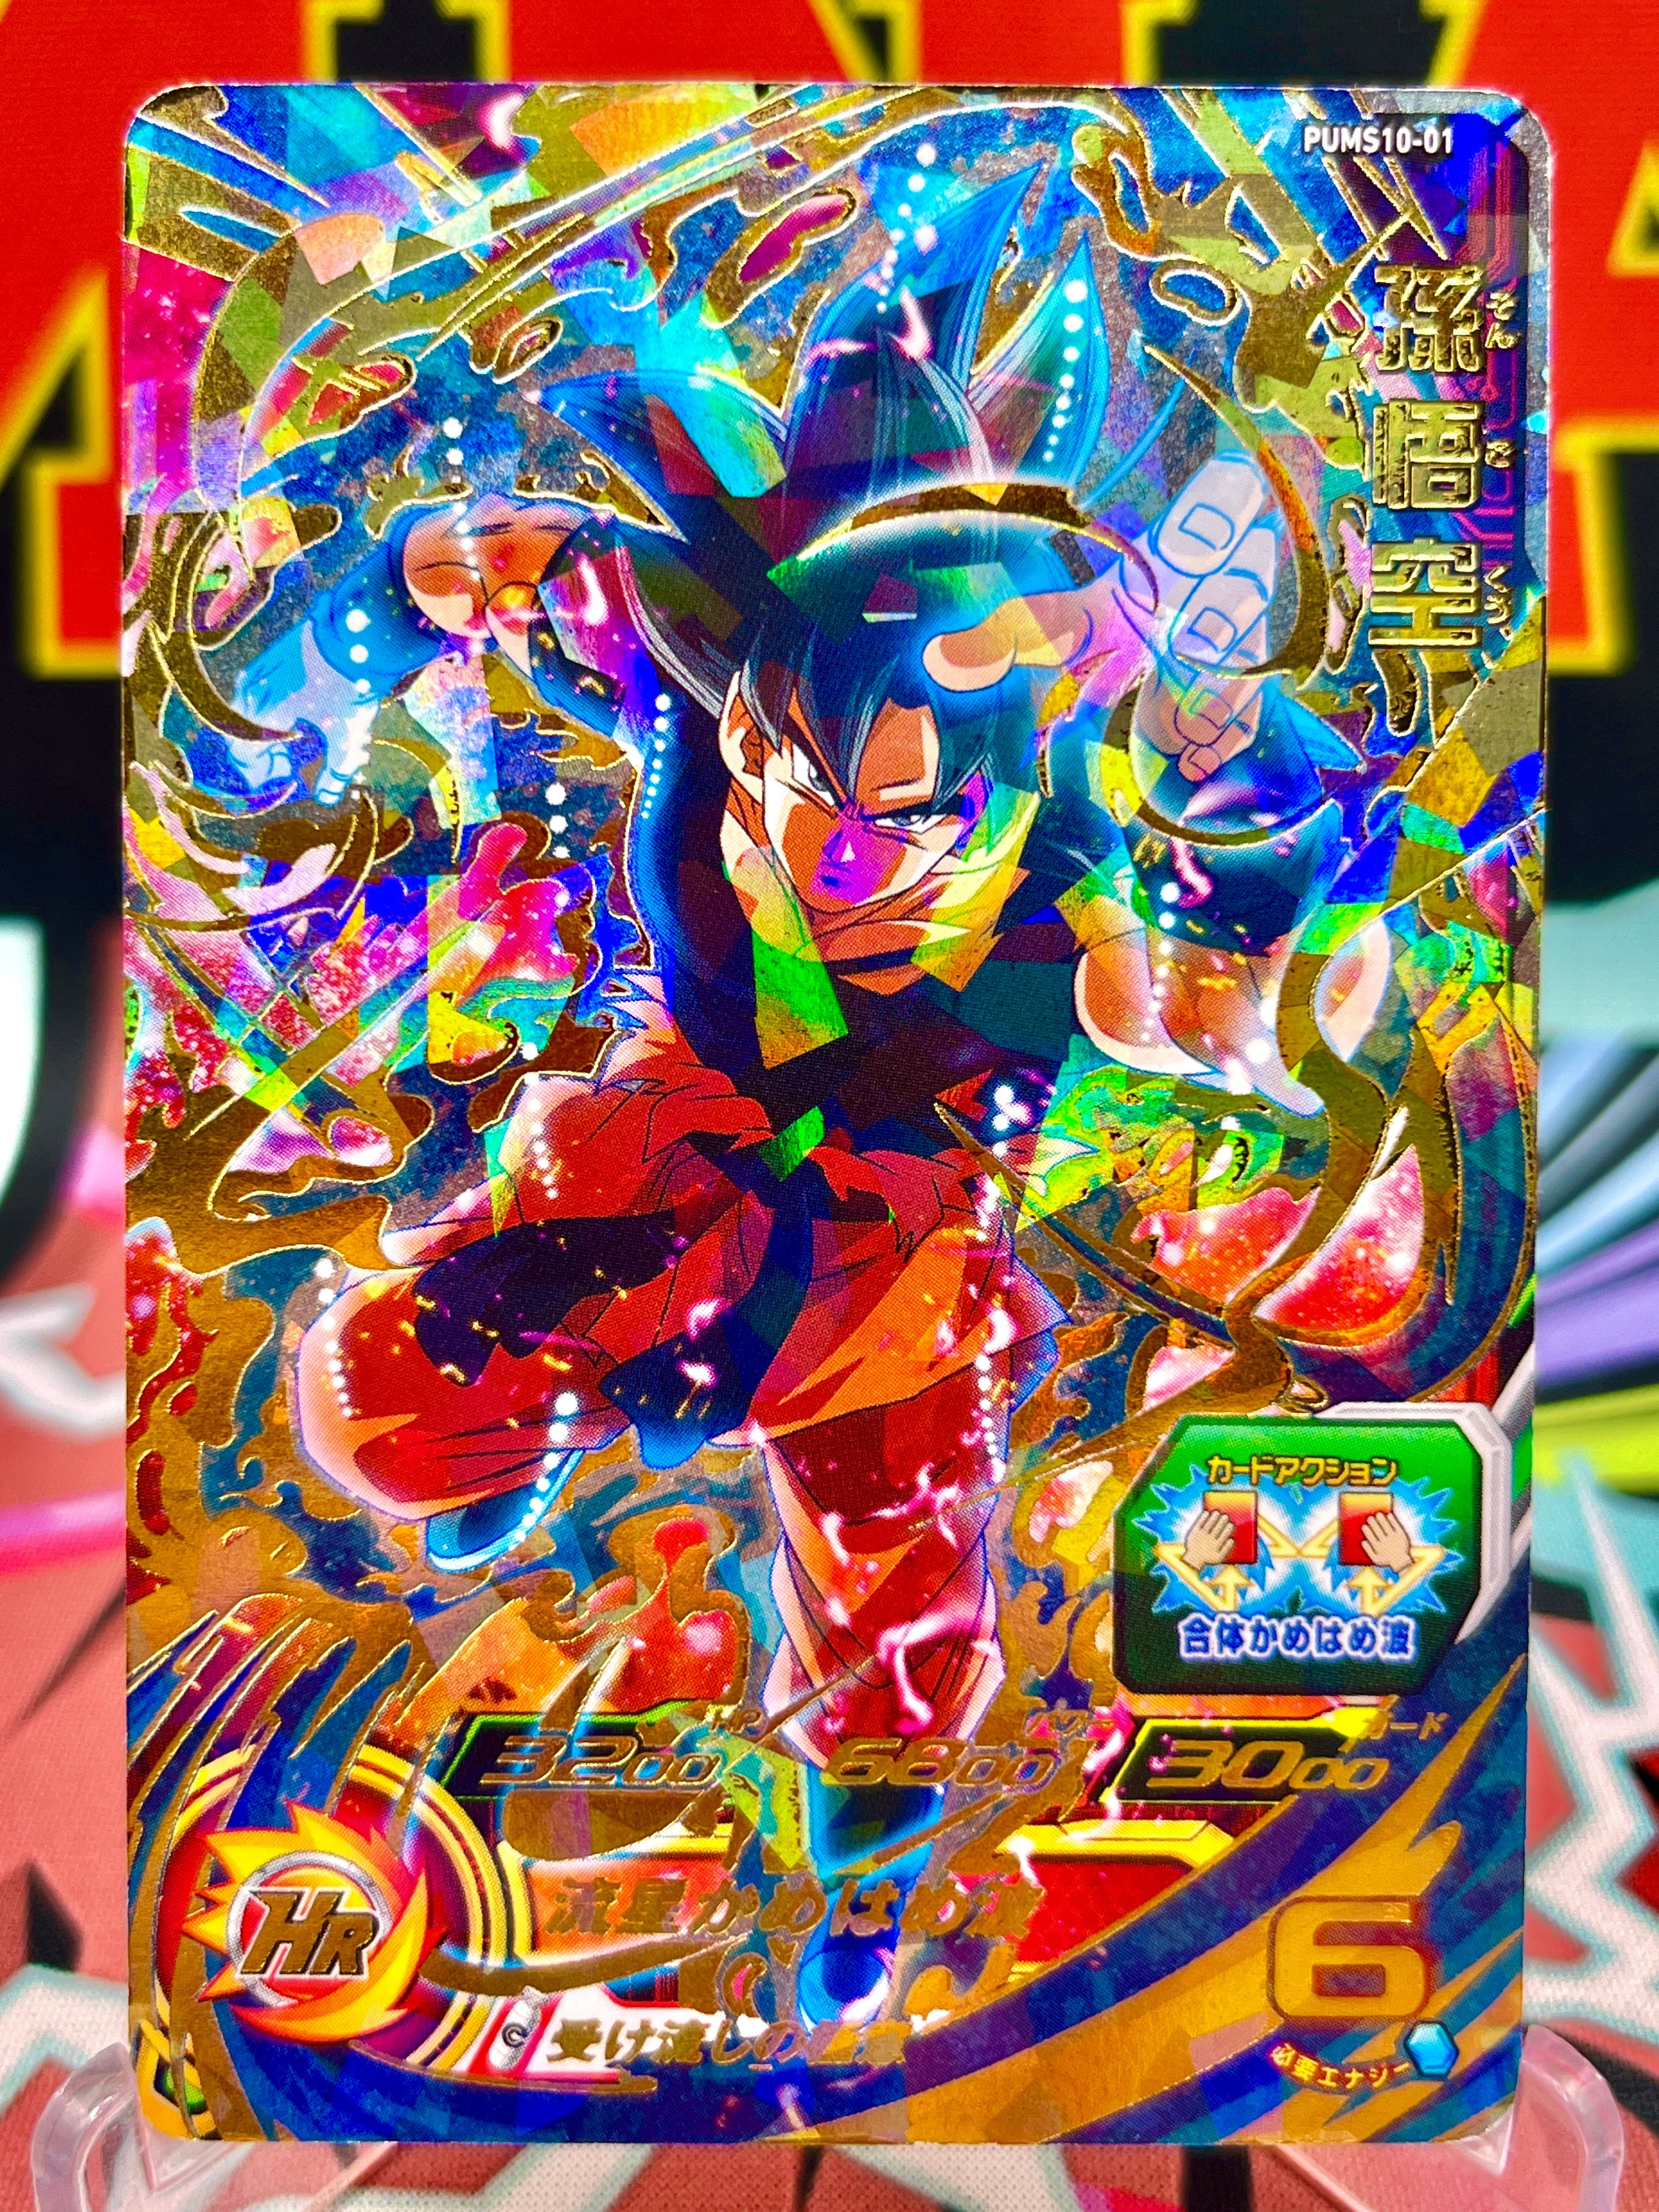 PUMS10-01 Son Goku SEC (2021)